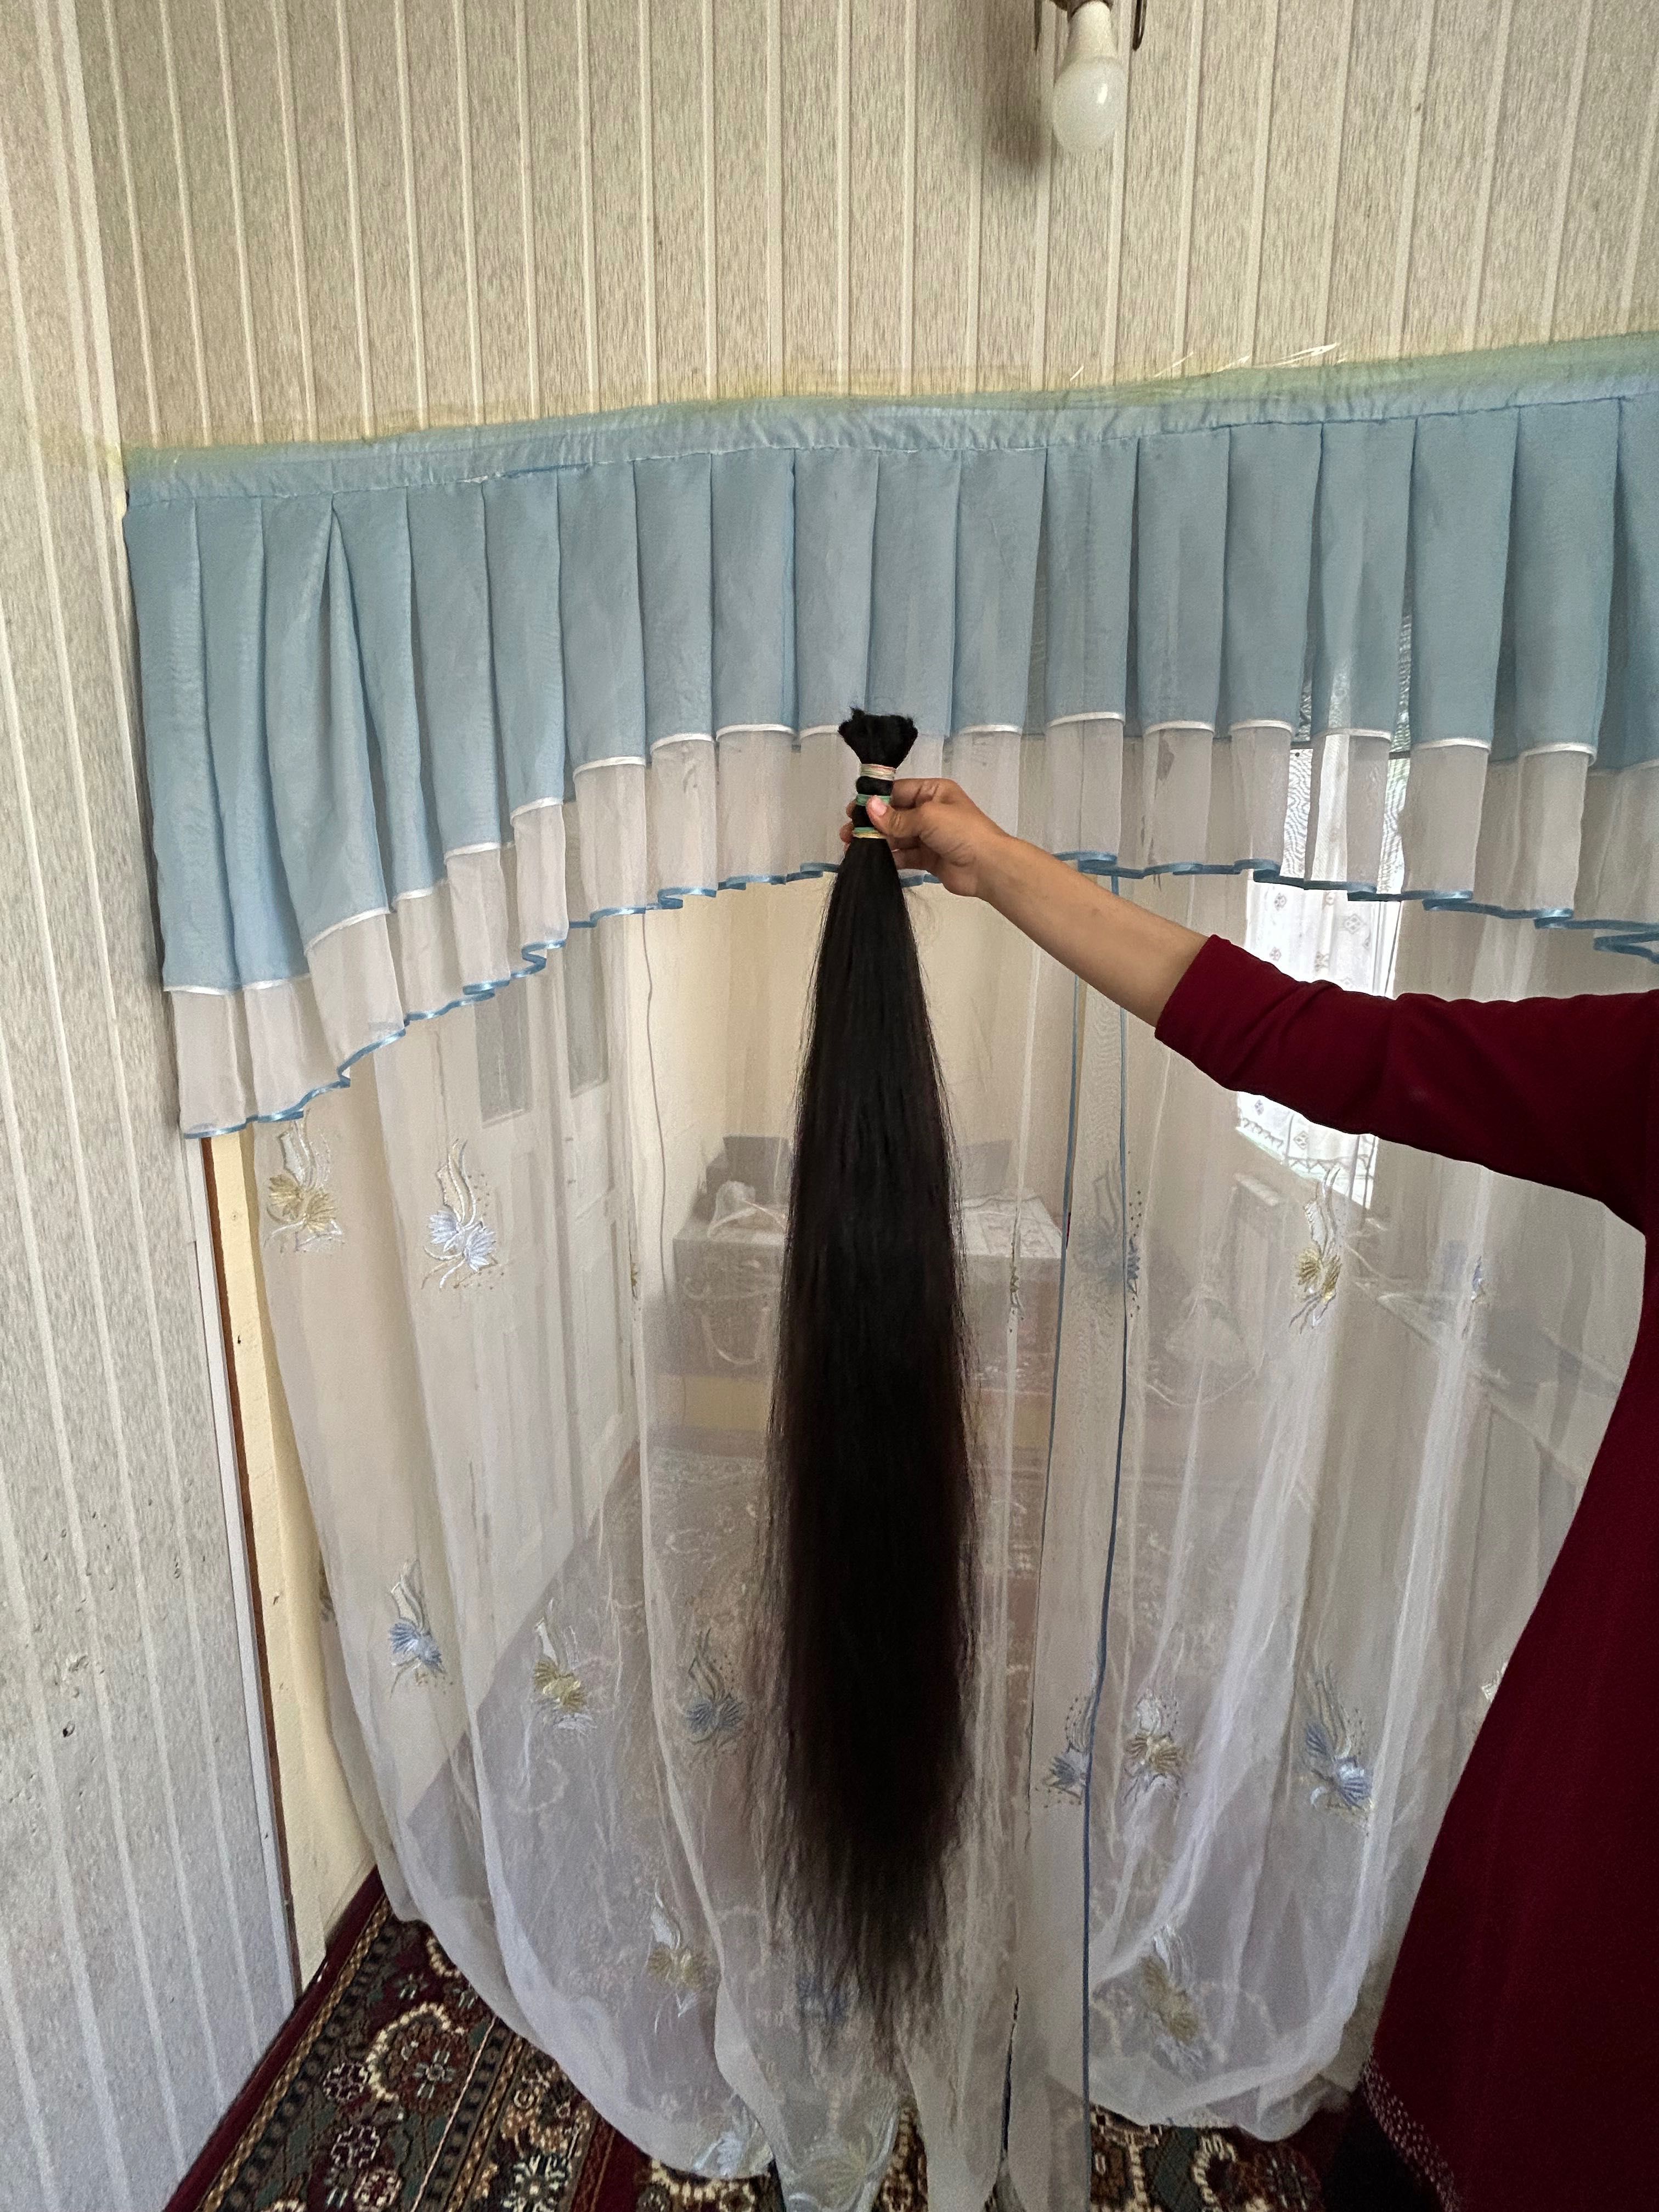 Продам метровый волосы | 1 метрлик  соч сотаман